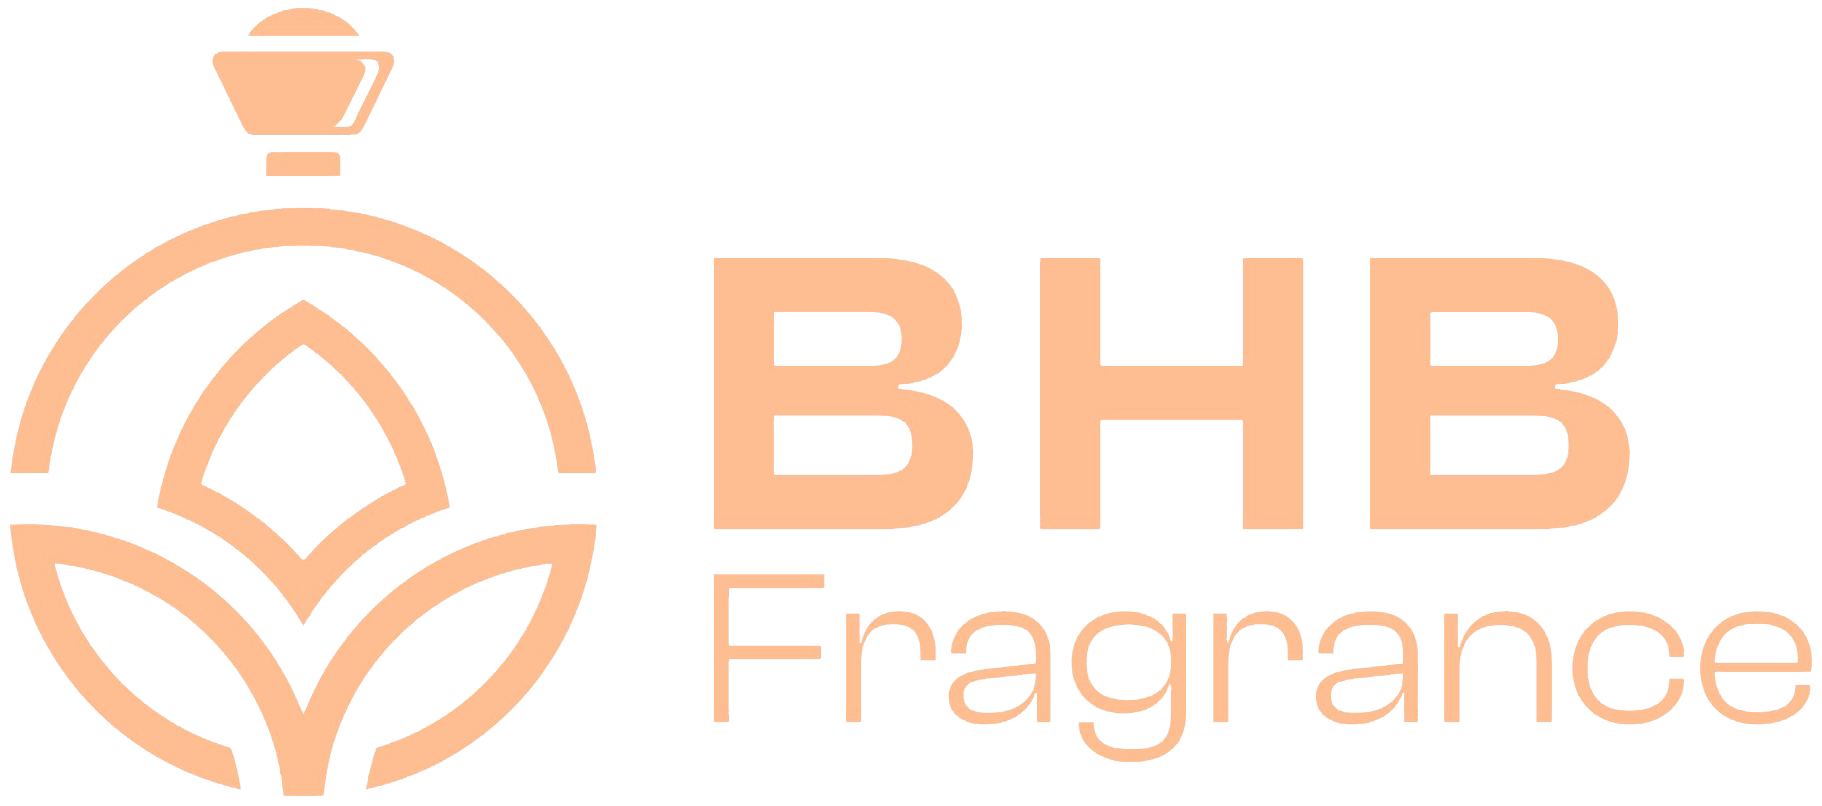 BHB Fragrance Manager